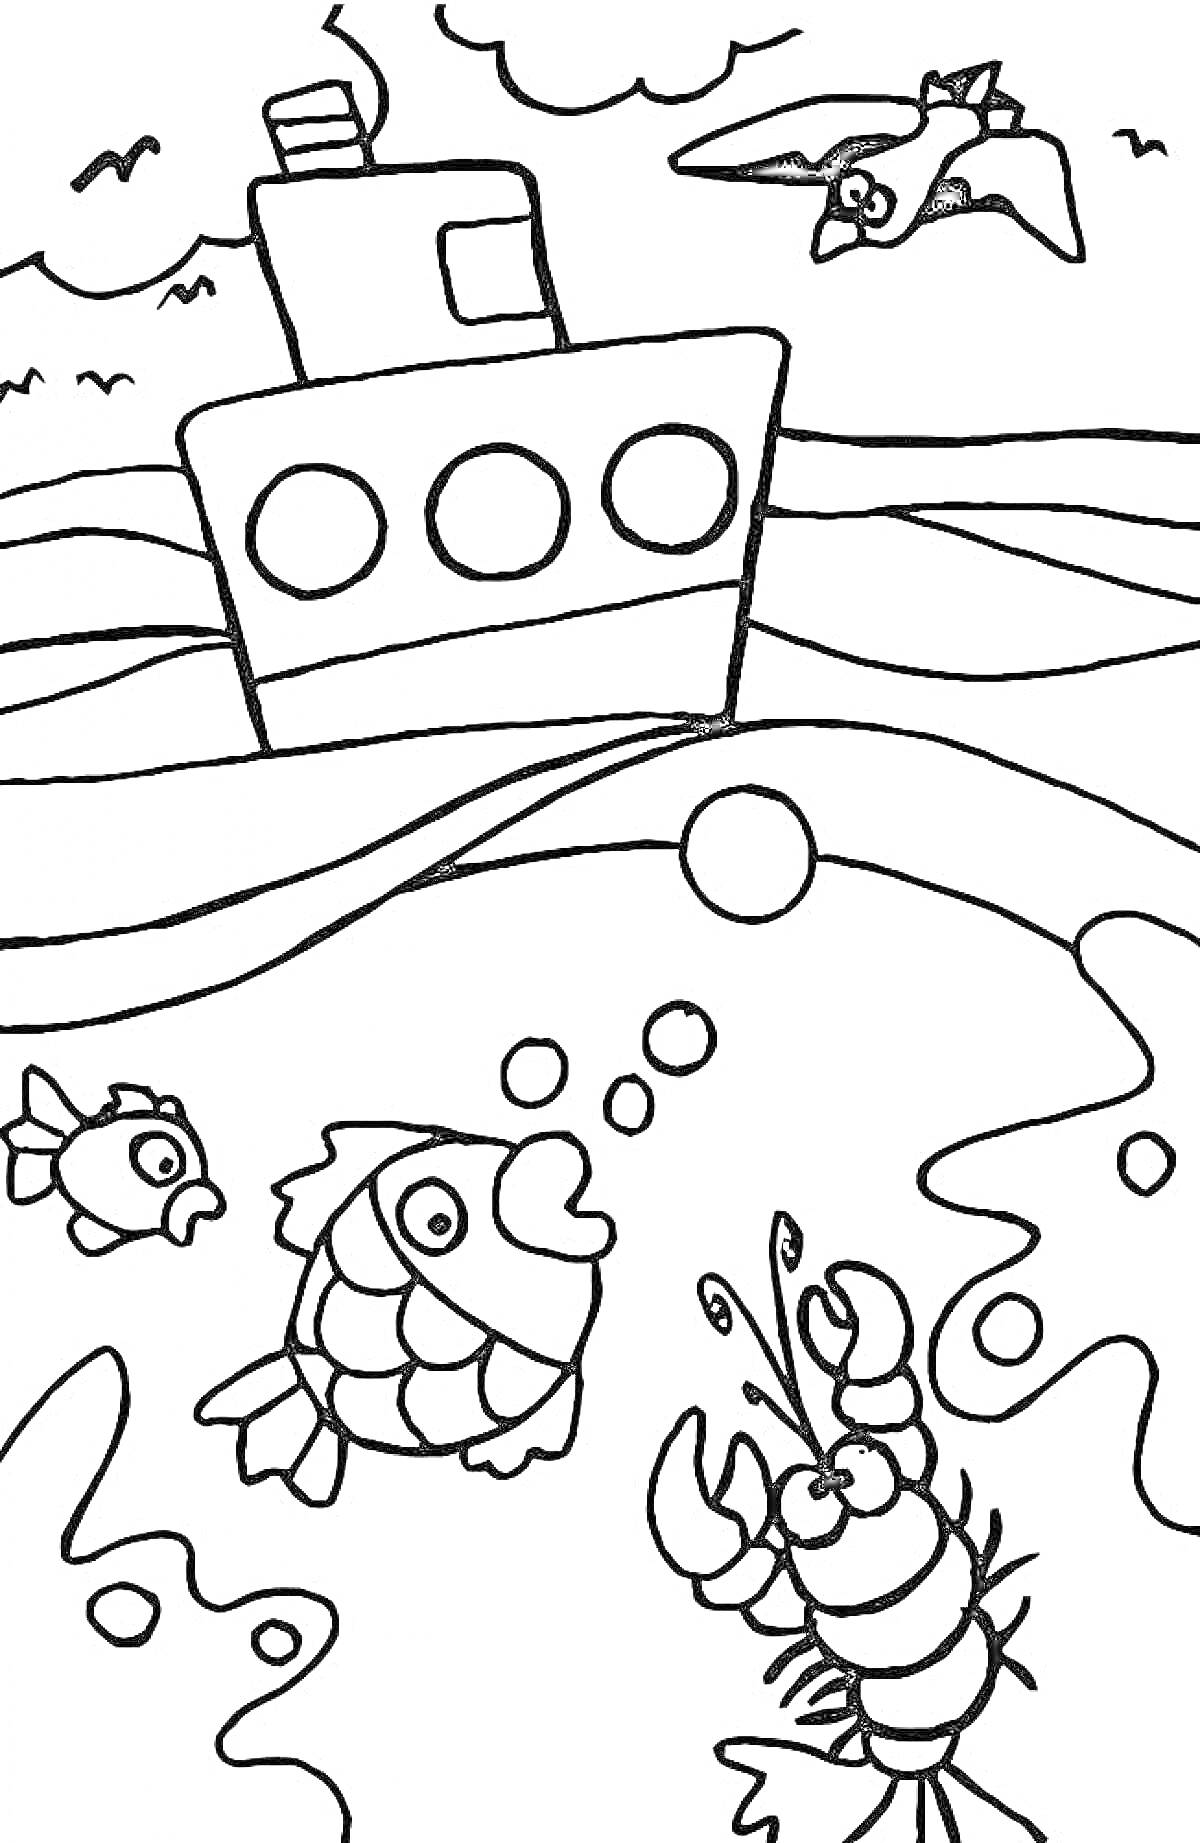 Раскраска Пляж с кораблем, рыбами и чайкой. На картинке изображен большой корабль на волнах, летящая чайка, две рыбы в воде и лобстер на берегу.